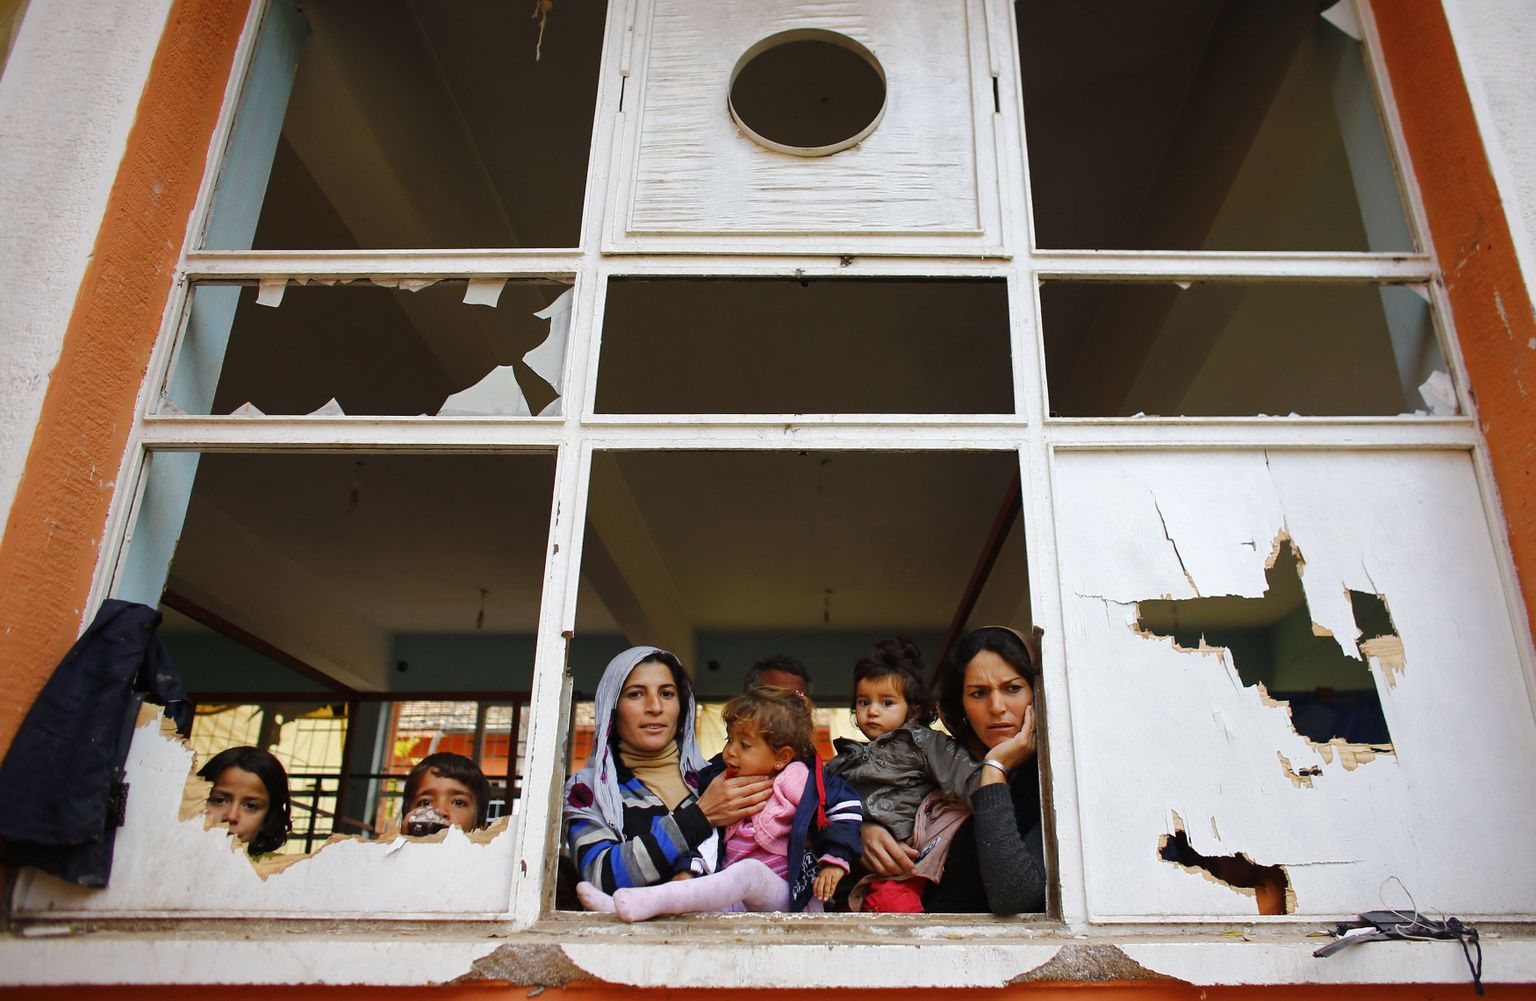 Süüriast Kobanest pärit kurdi põgenikud sel nädalavahetusel Türgi piirilinnas tühjas koolimajas.